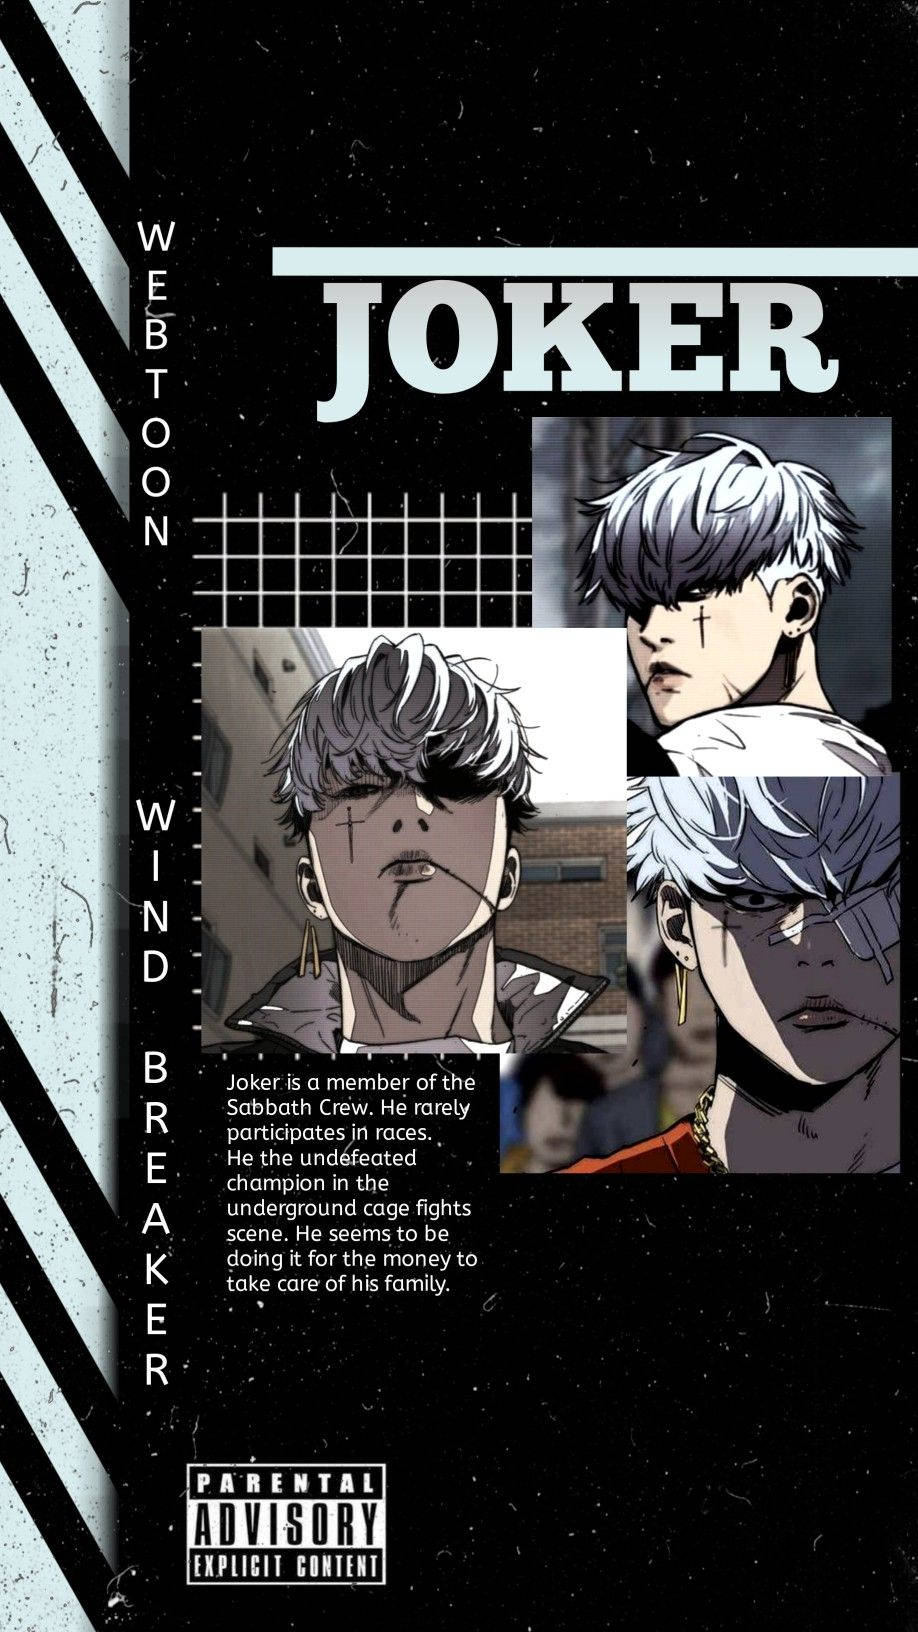 Wind Breaker Joker Character Poster